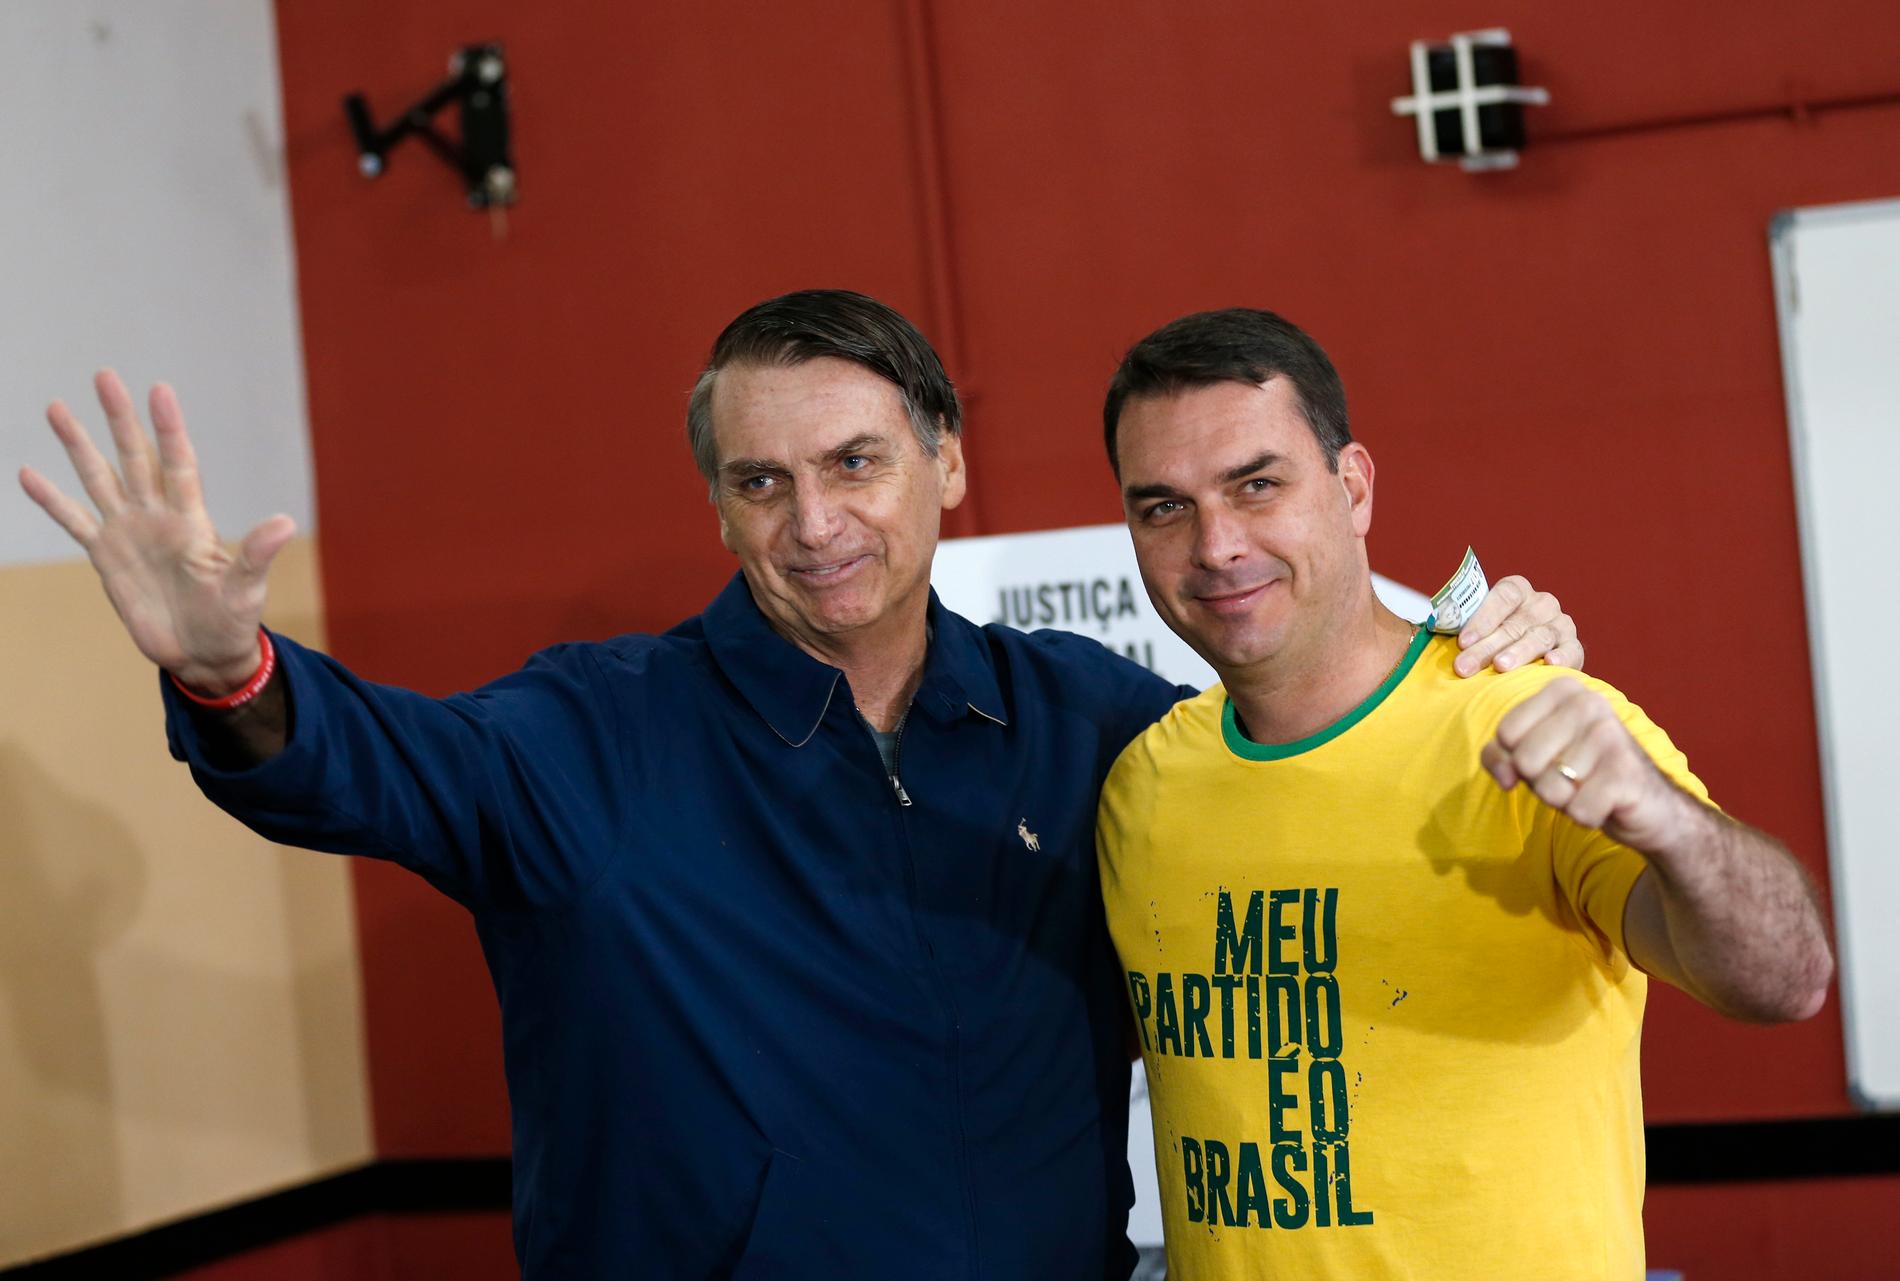 Jair Bolsonaro tillsammans med äldste sonen Flávio. Bilden är från presidentvalskampanjen i oktober 2018.